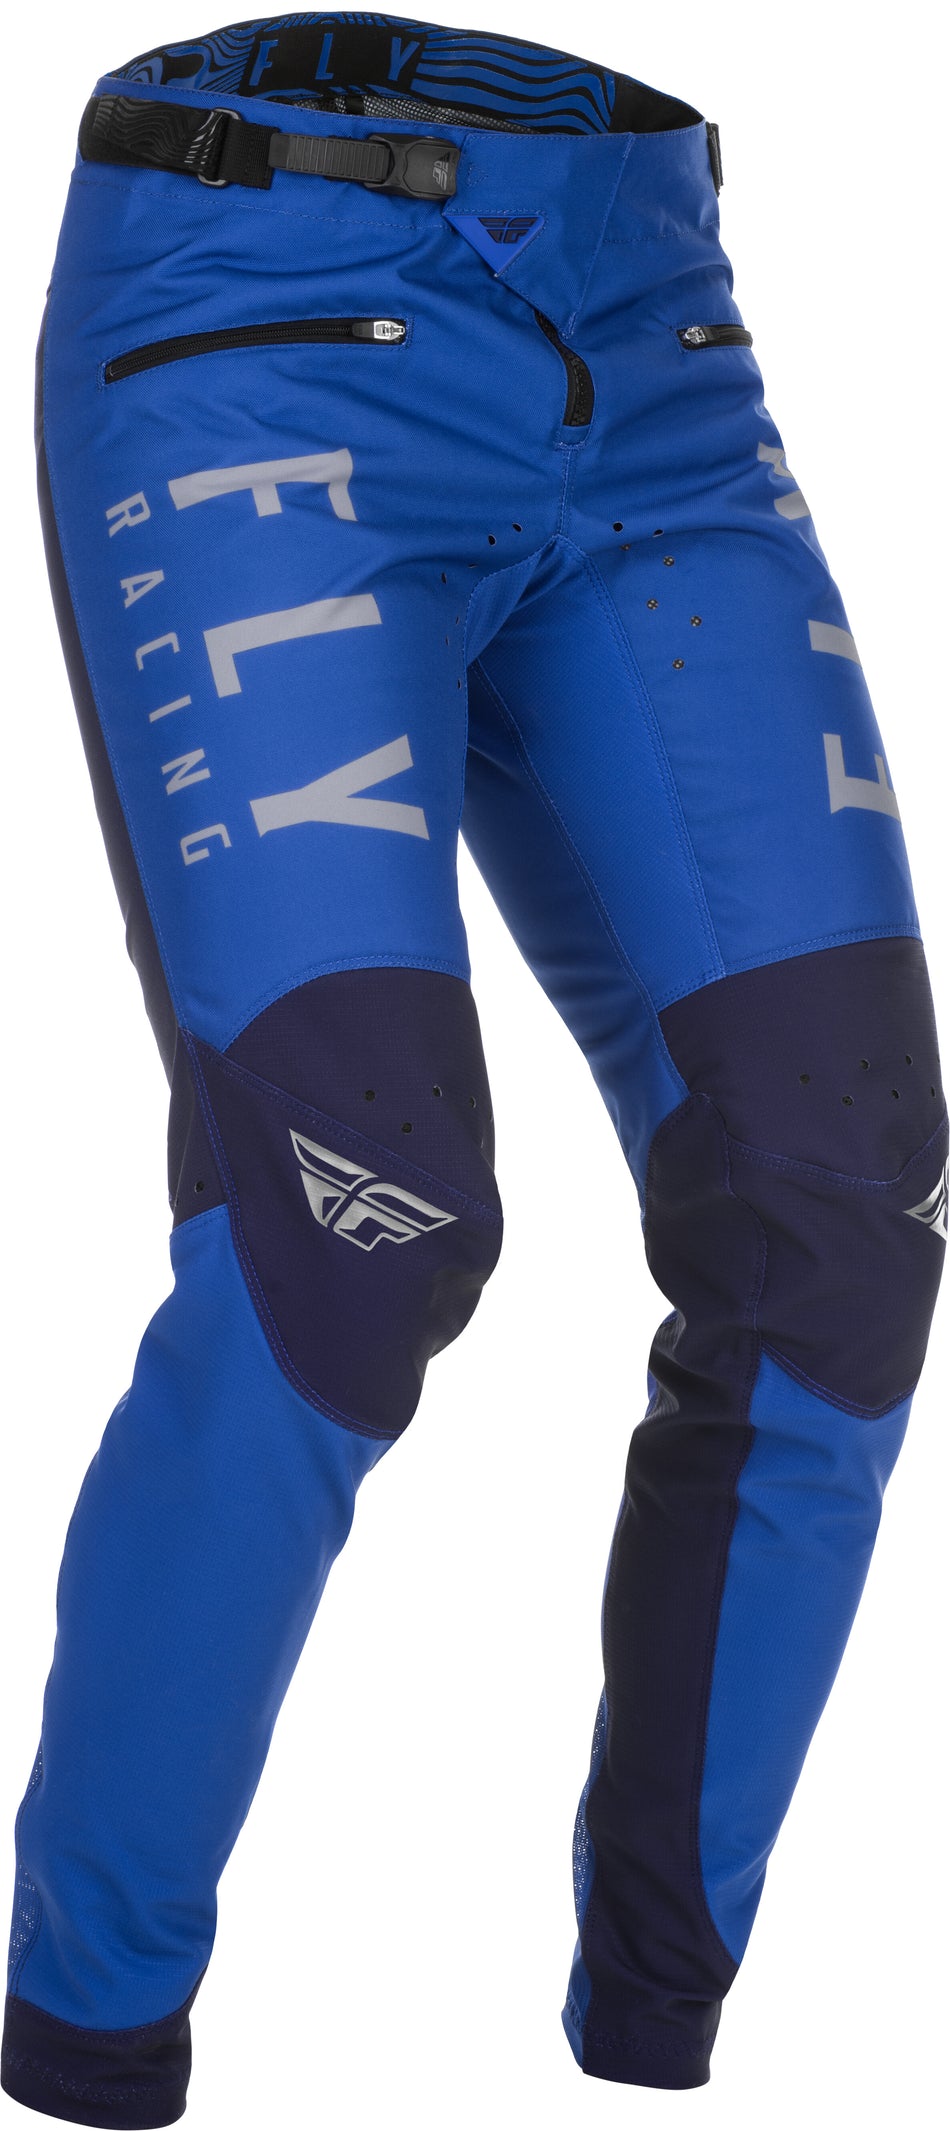 FLY RACING Kinetic Bicycle Pants Blue Sz 36 374-04136